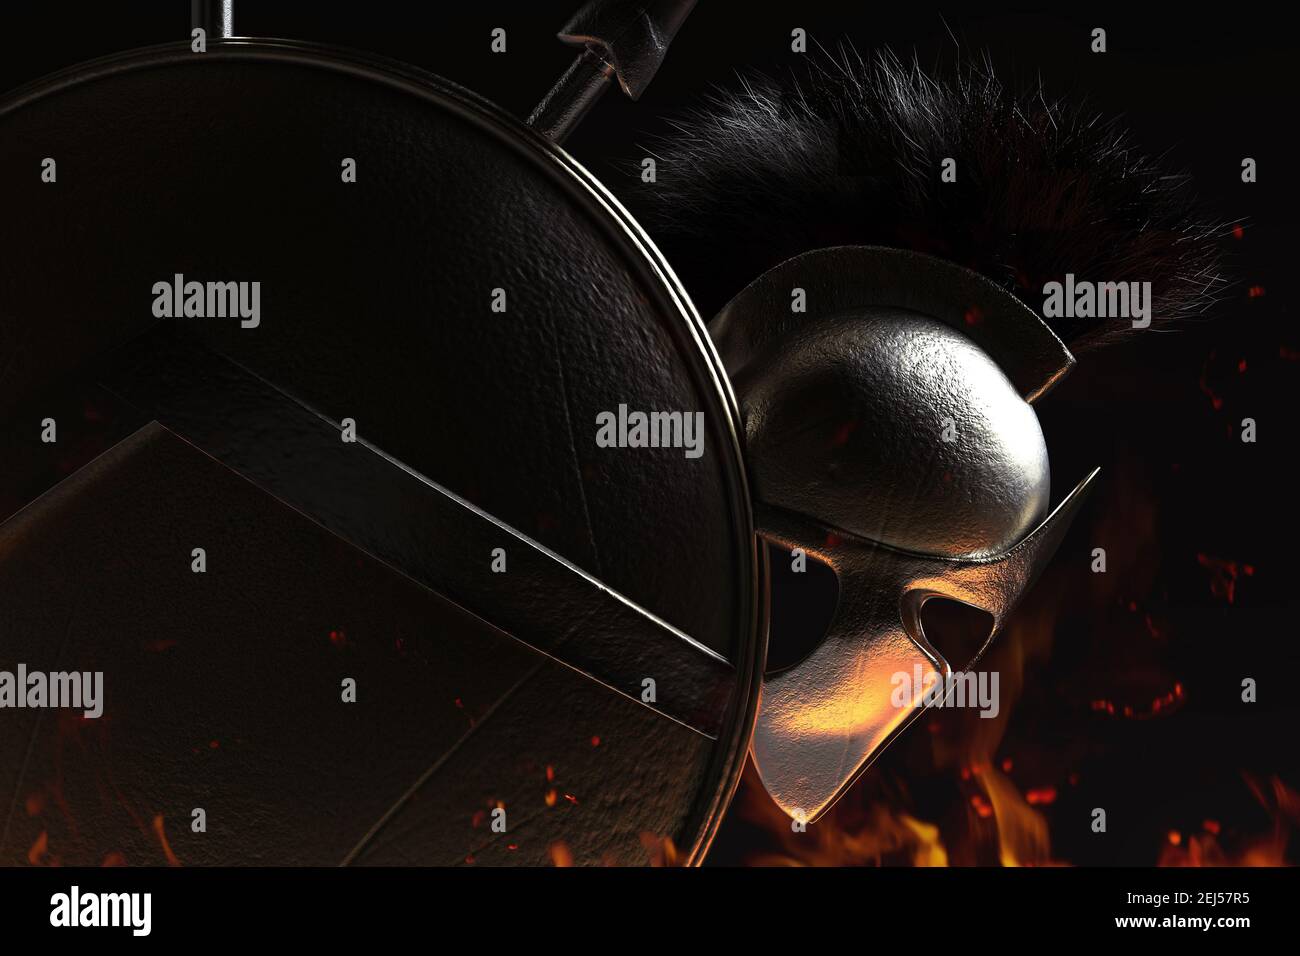 rappresentazione in 3d del casco corazzato spartano e dello scudo ombreggiato su sfondo scuro. Foto Stock